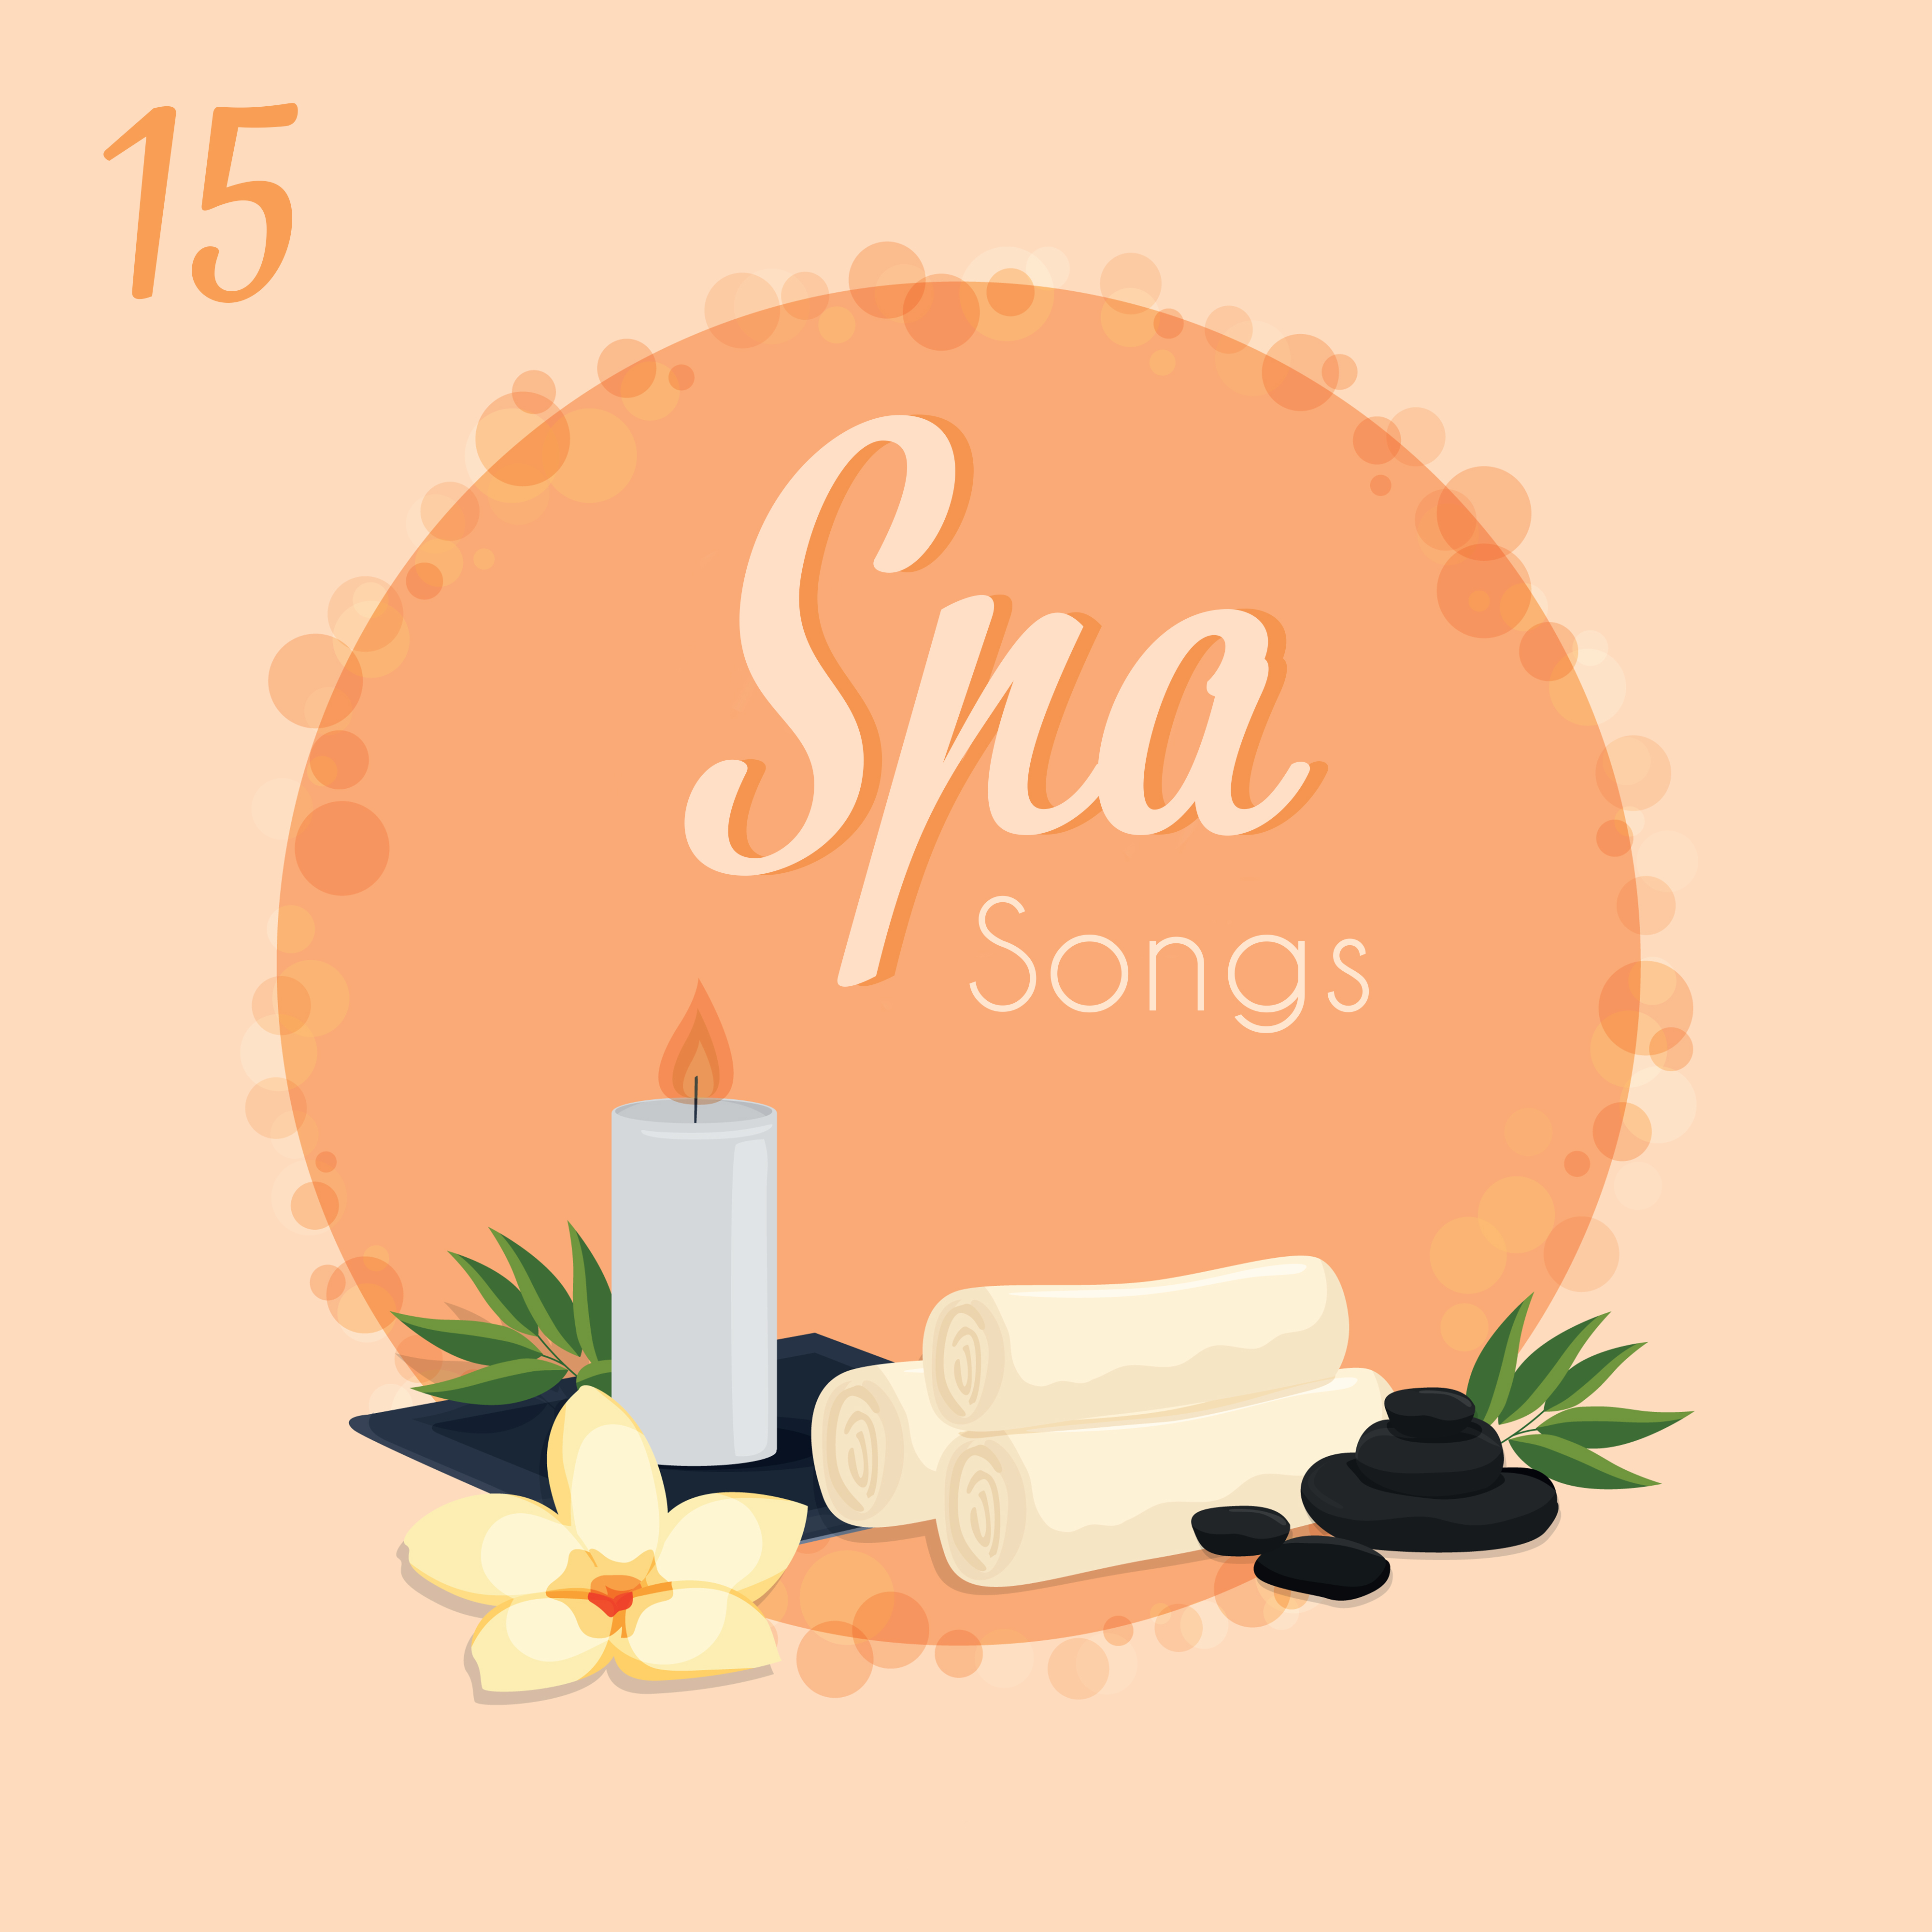 15 Spa Songs